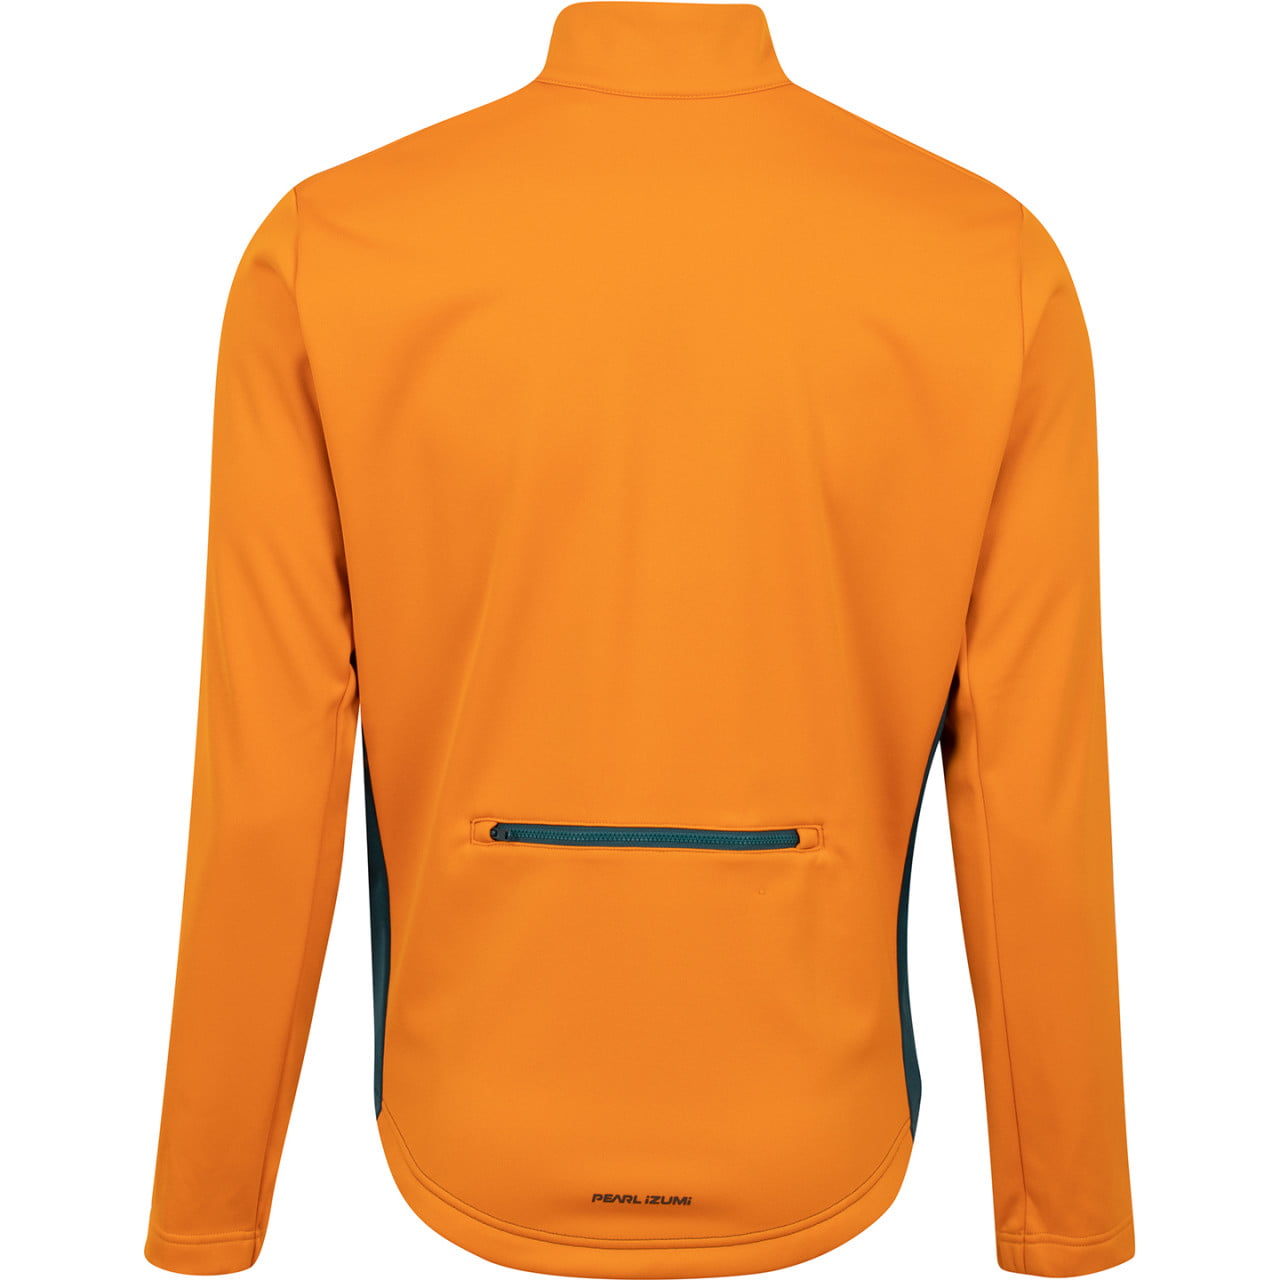 PEARL IZUMI Quest AmFib Winter Jacket orange